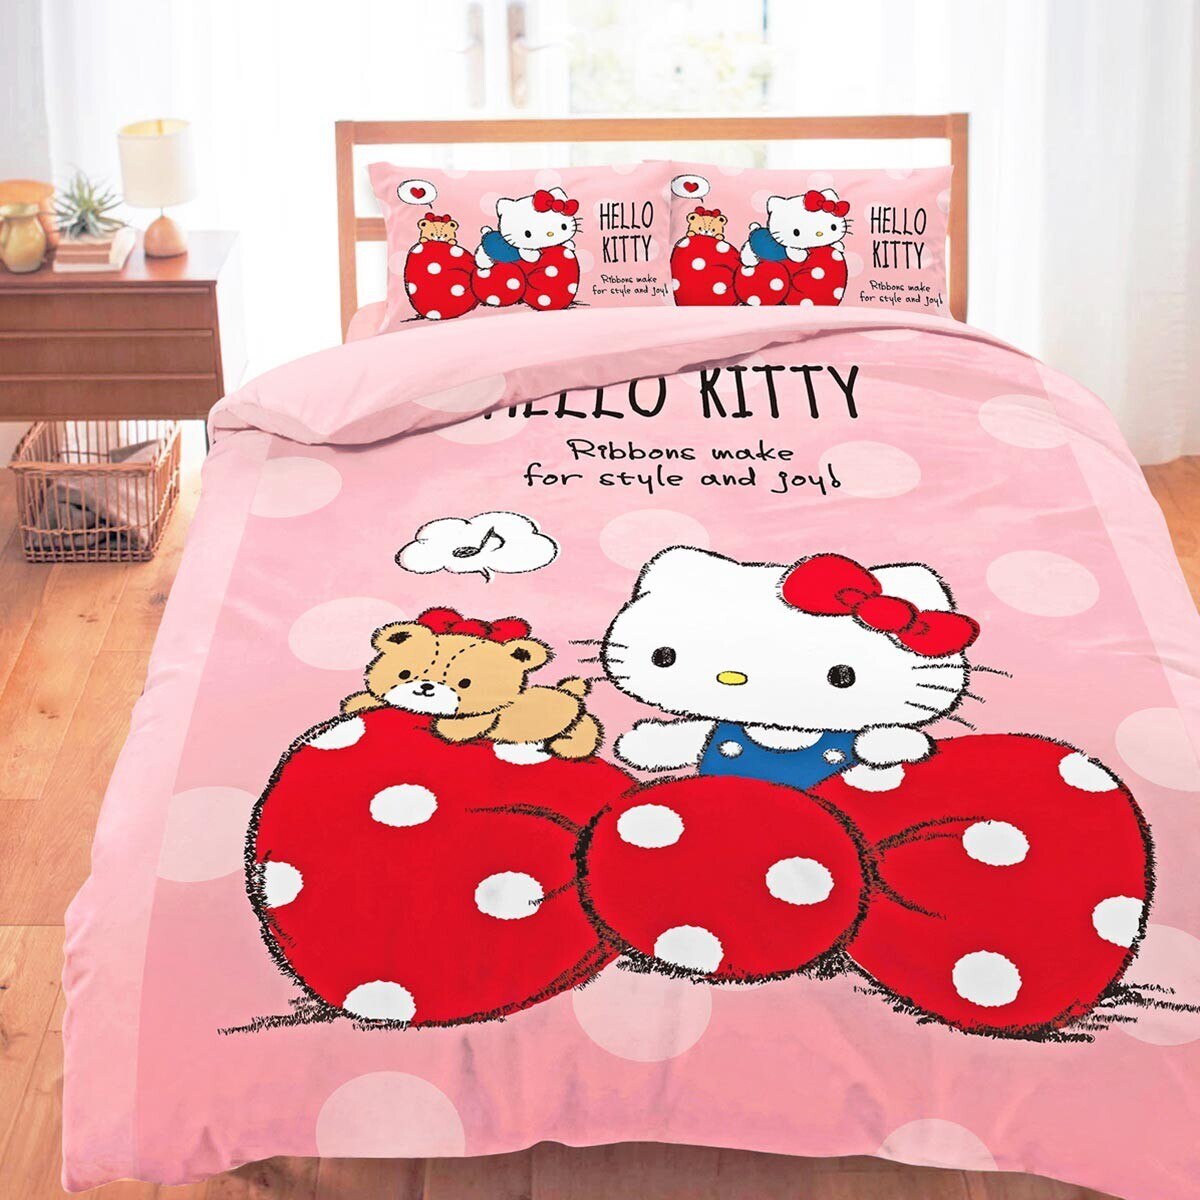 100%純棉雙人兩用床包被套 4件組 152公分 X 190公分 Hello Kitty 點點蝴蝶結